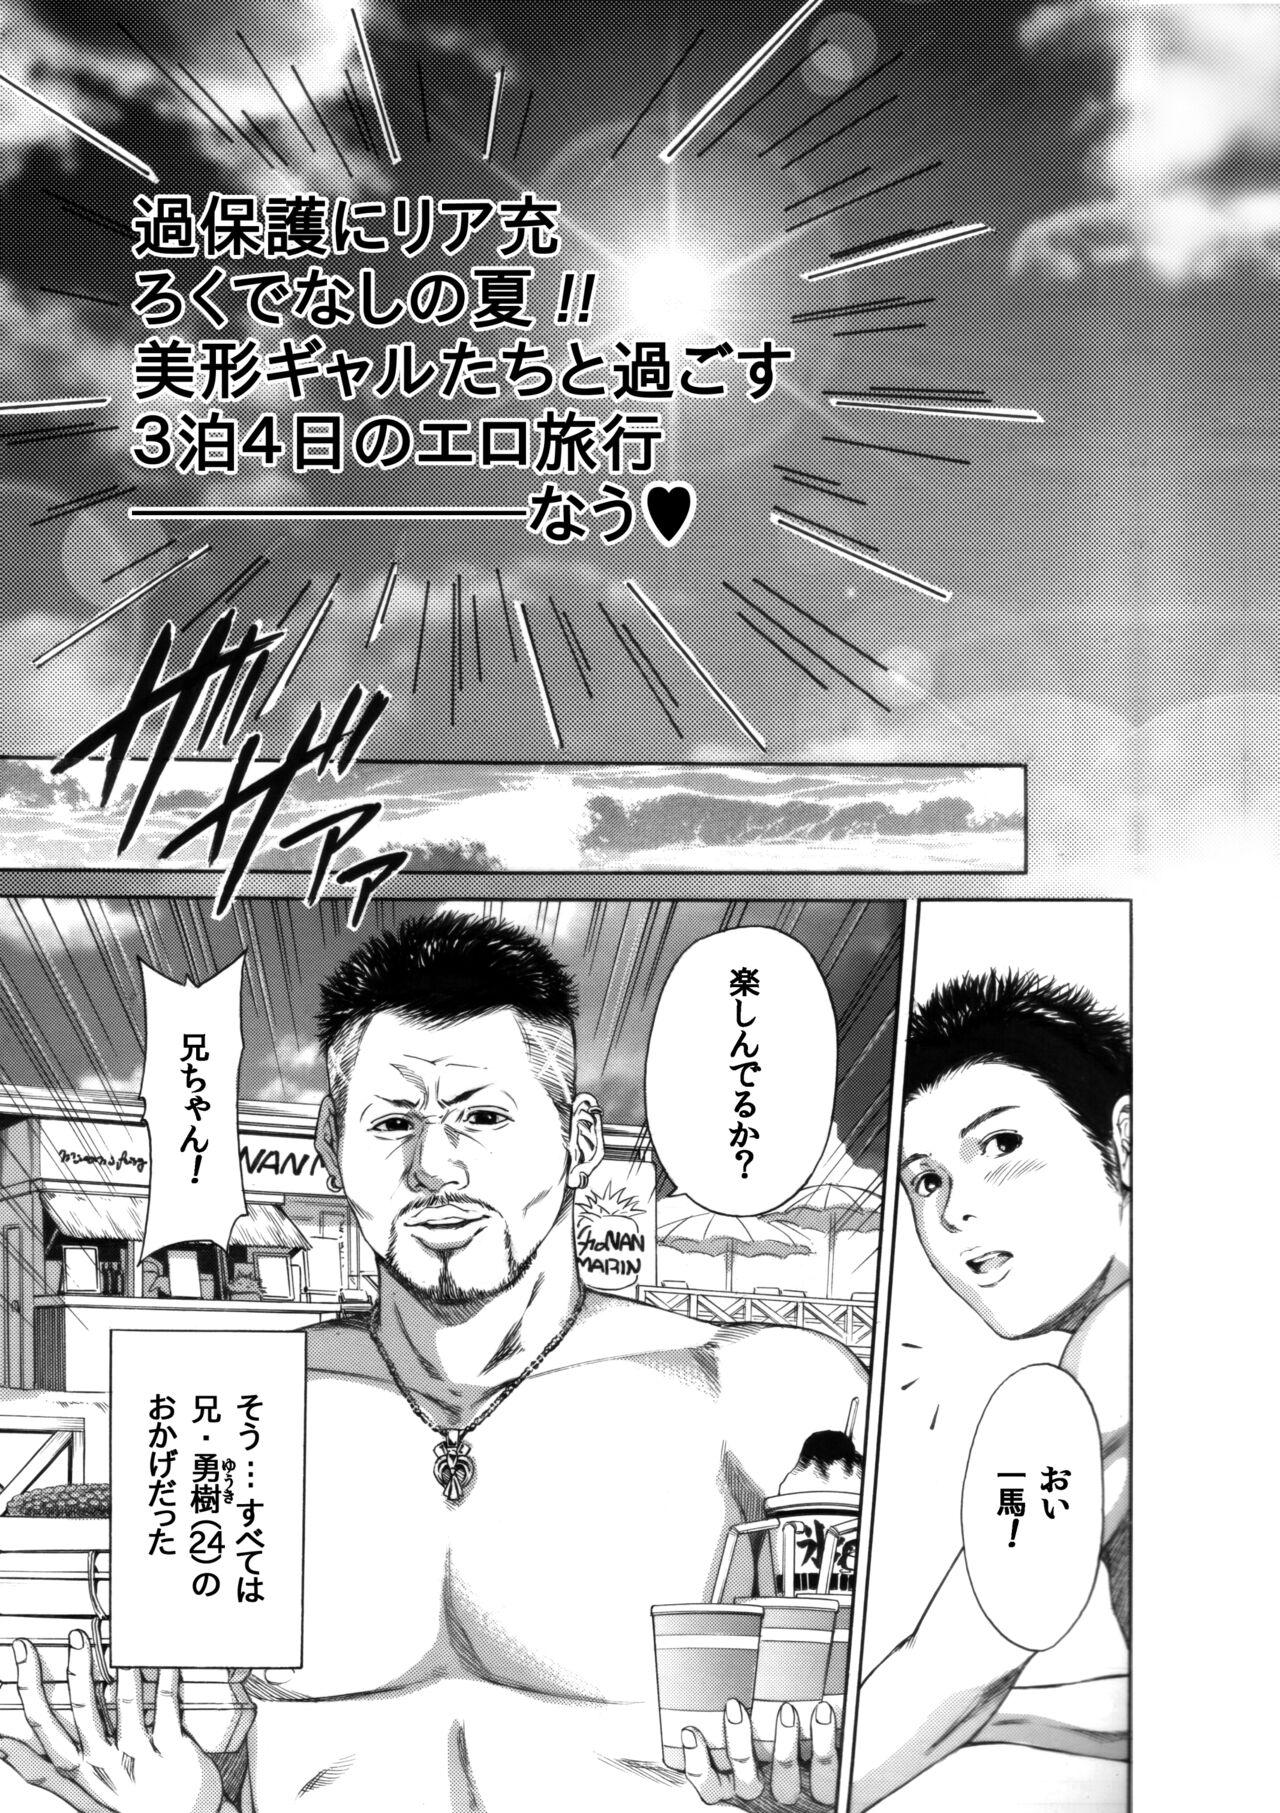 Affair [Okumori Boy & Team Gyaru Paipai] Okumori boui shoki ero manga-shuu “san-biki ga yaru” (tsuujou-ban) - Original Mexicana - Page 7